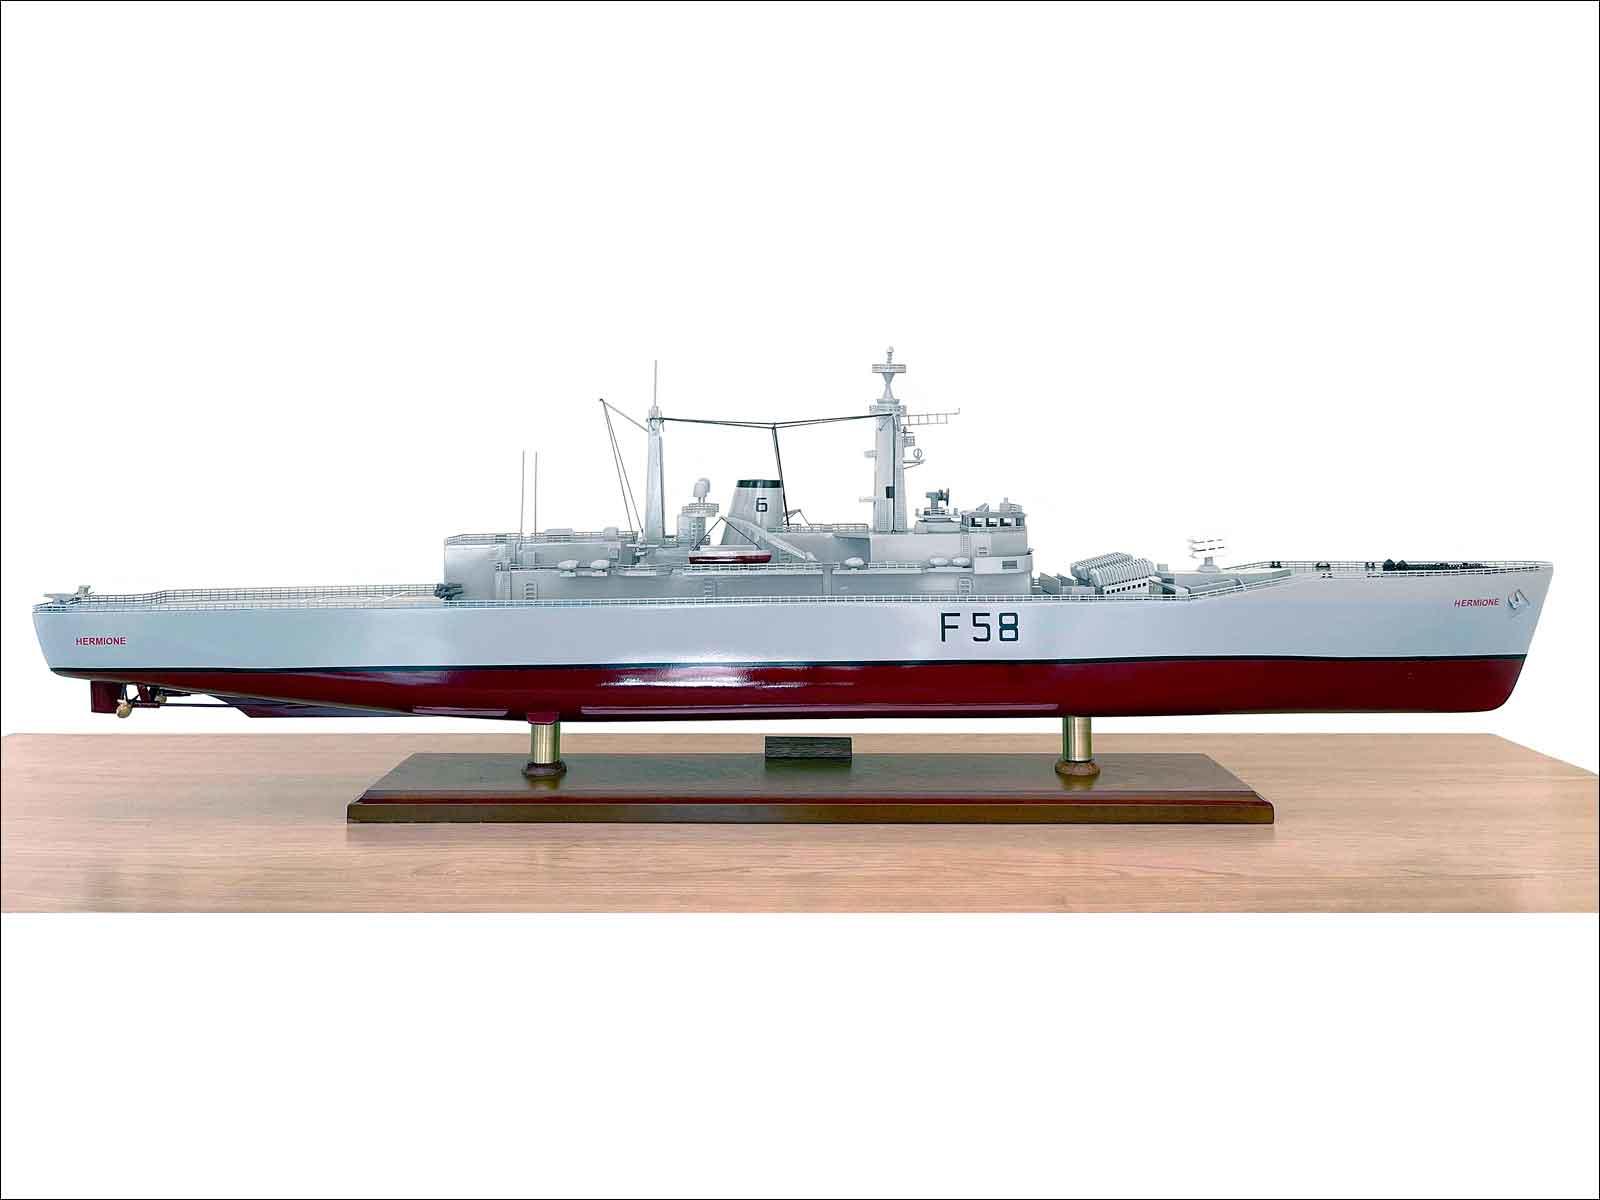 frigate model model fully built